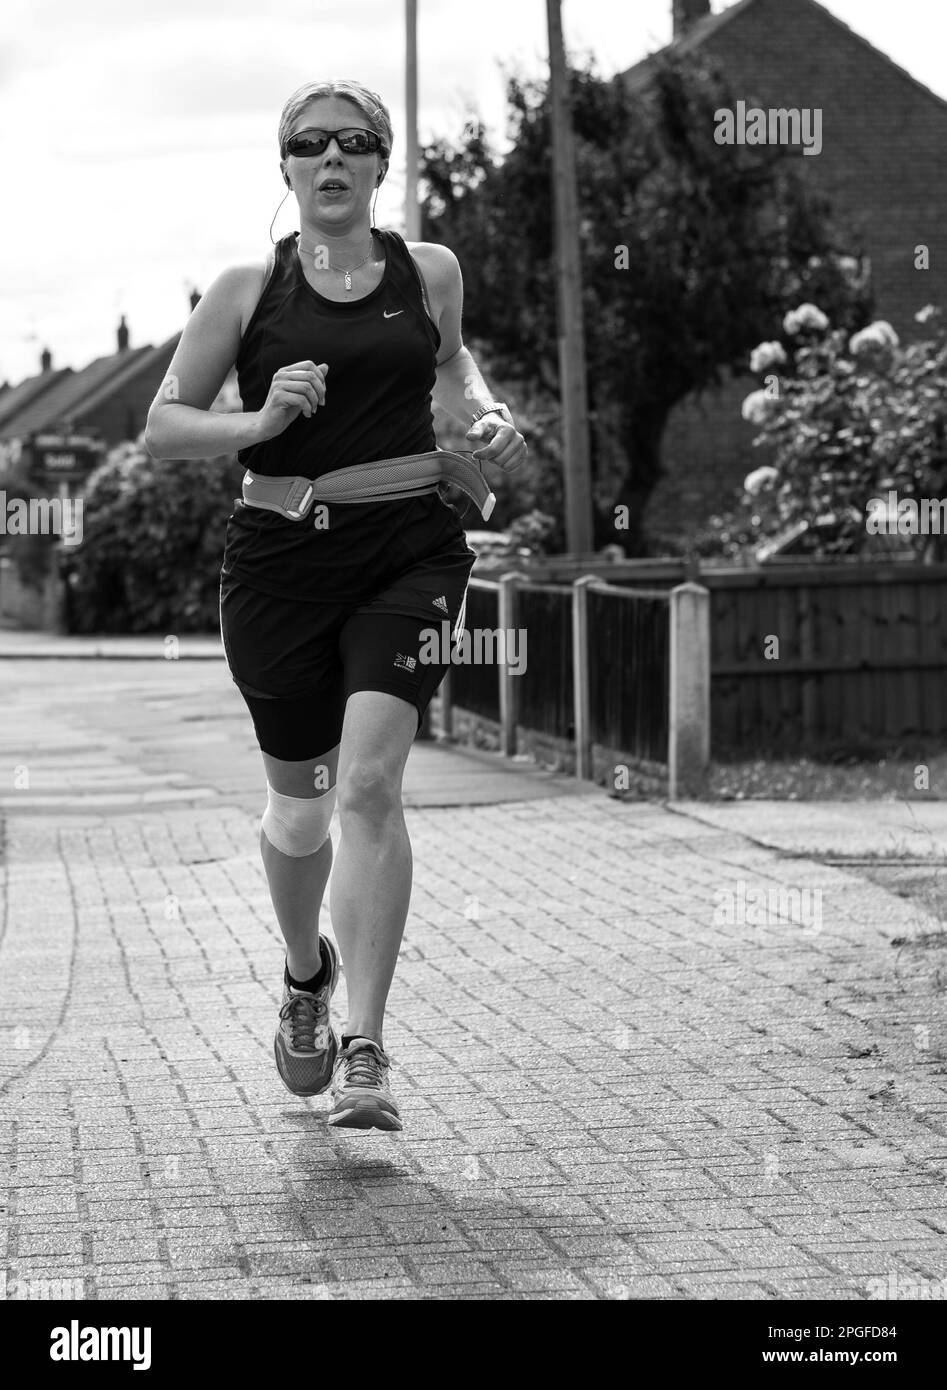 Immagine in bianco e nero di una runner femminile che corre per una strada Foto Stock